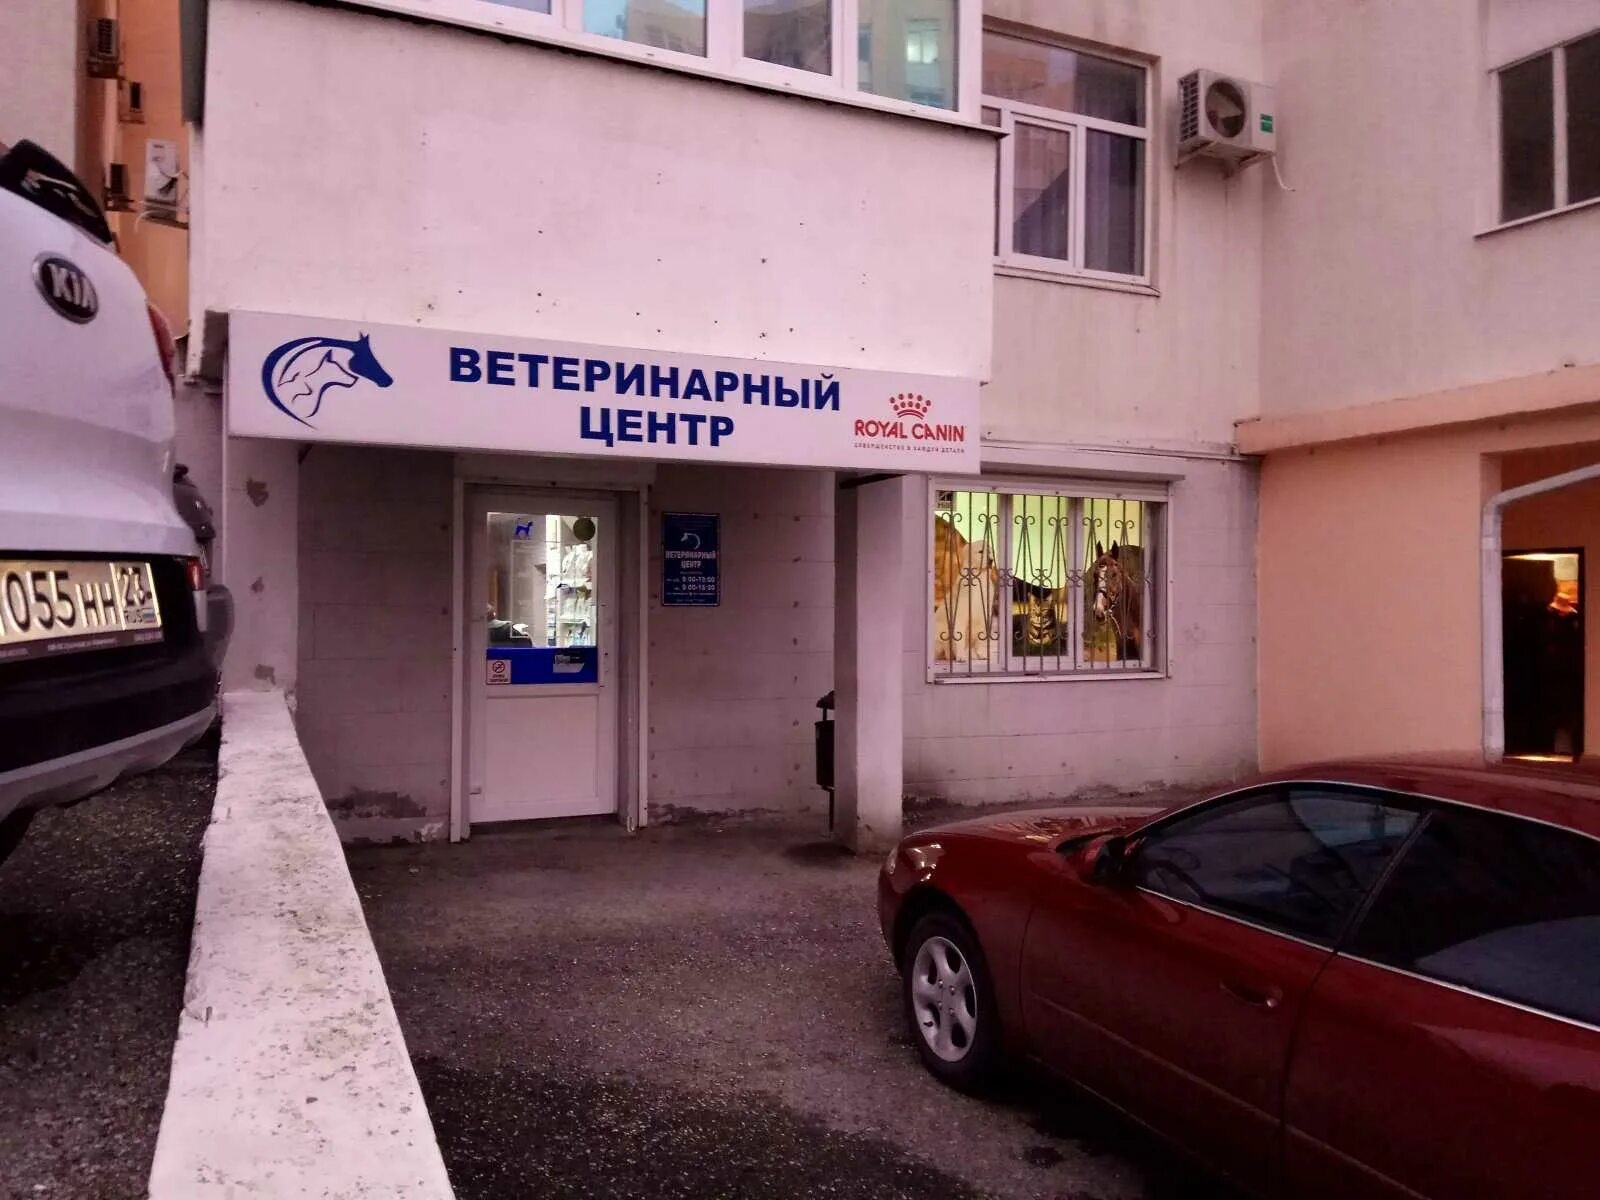 Ветеринарная грибоедова. Ветеринарная клиника ветеринарный центр — Грибоедова, 62.